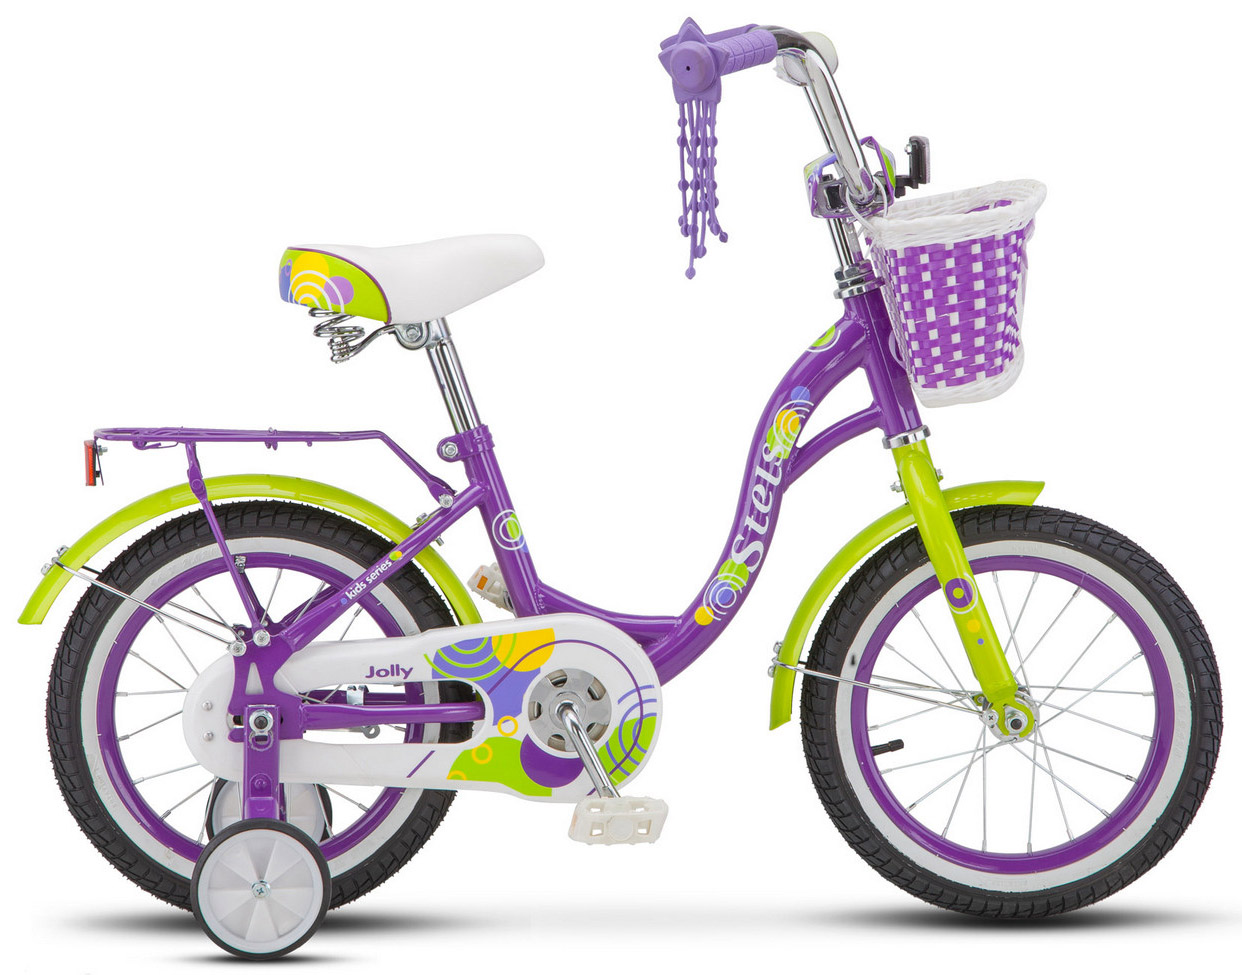  Отзывы о Детском велосипеде Stels Jolly 14 V010 2019